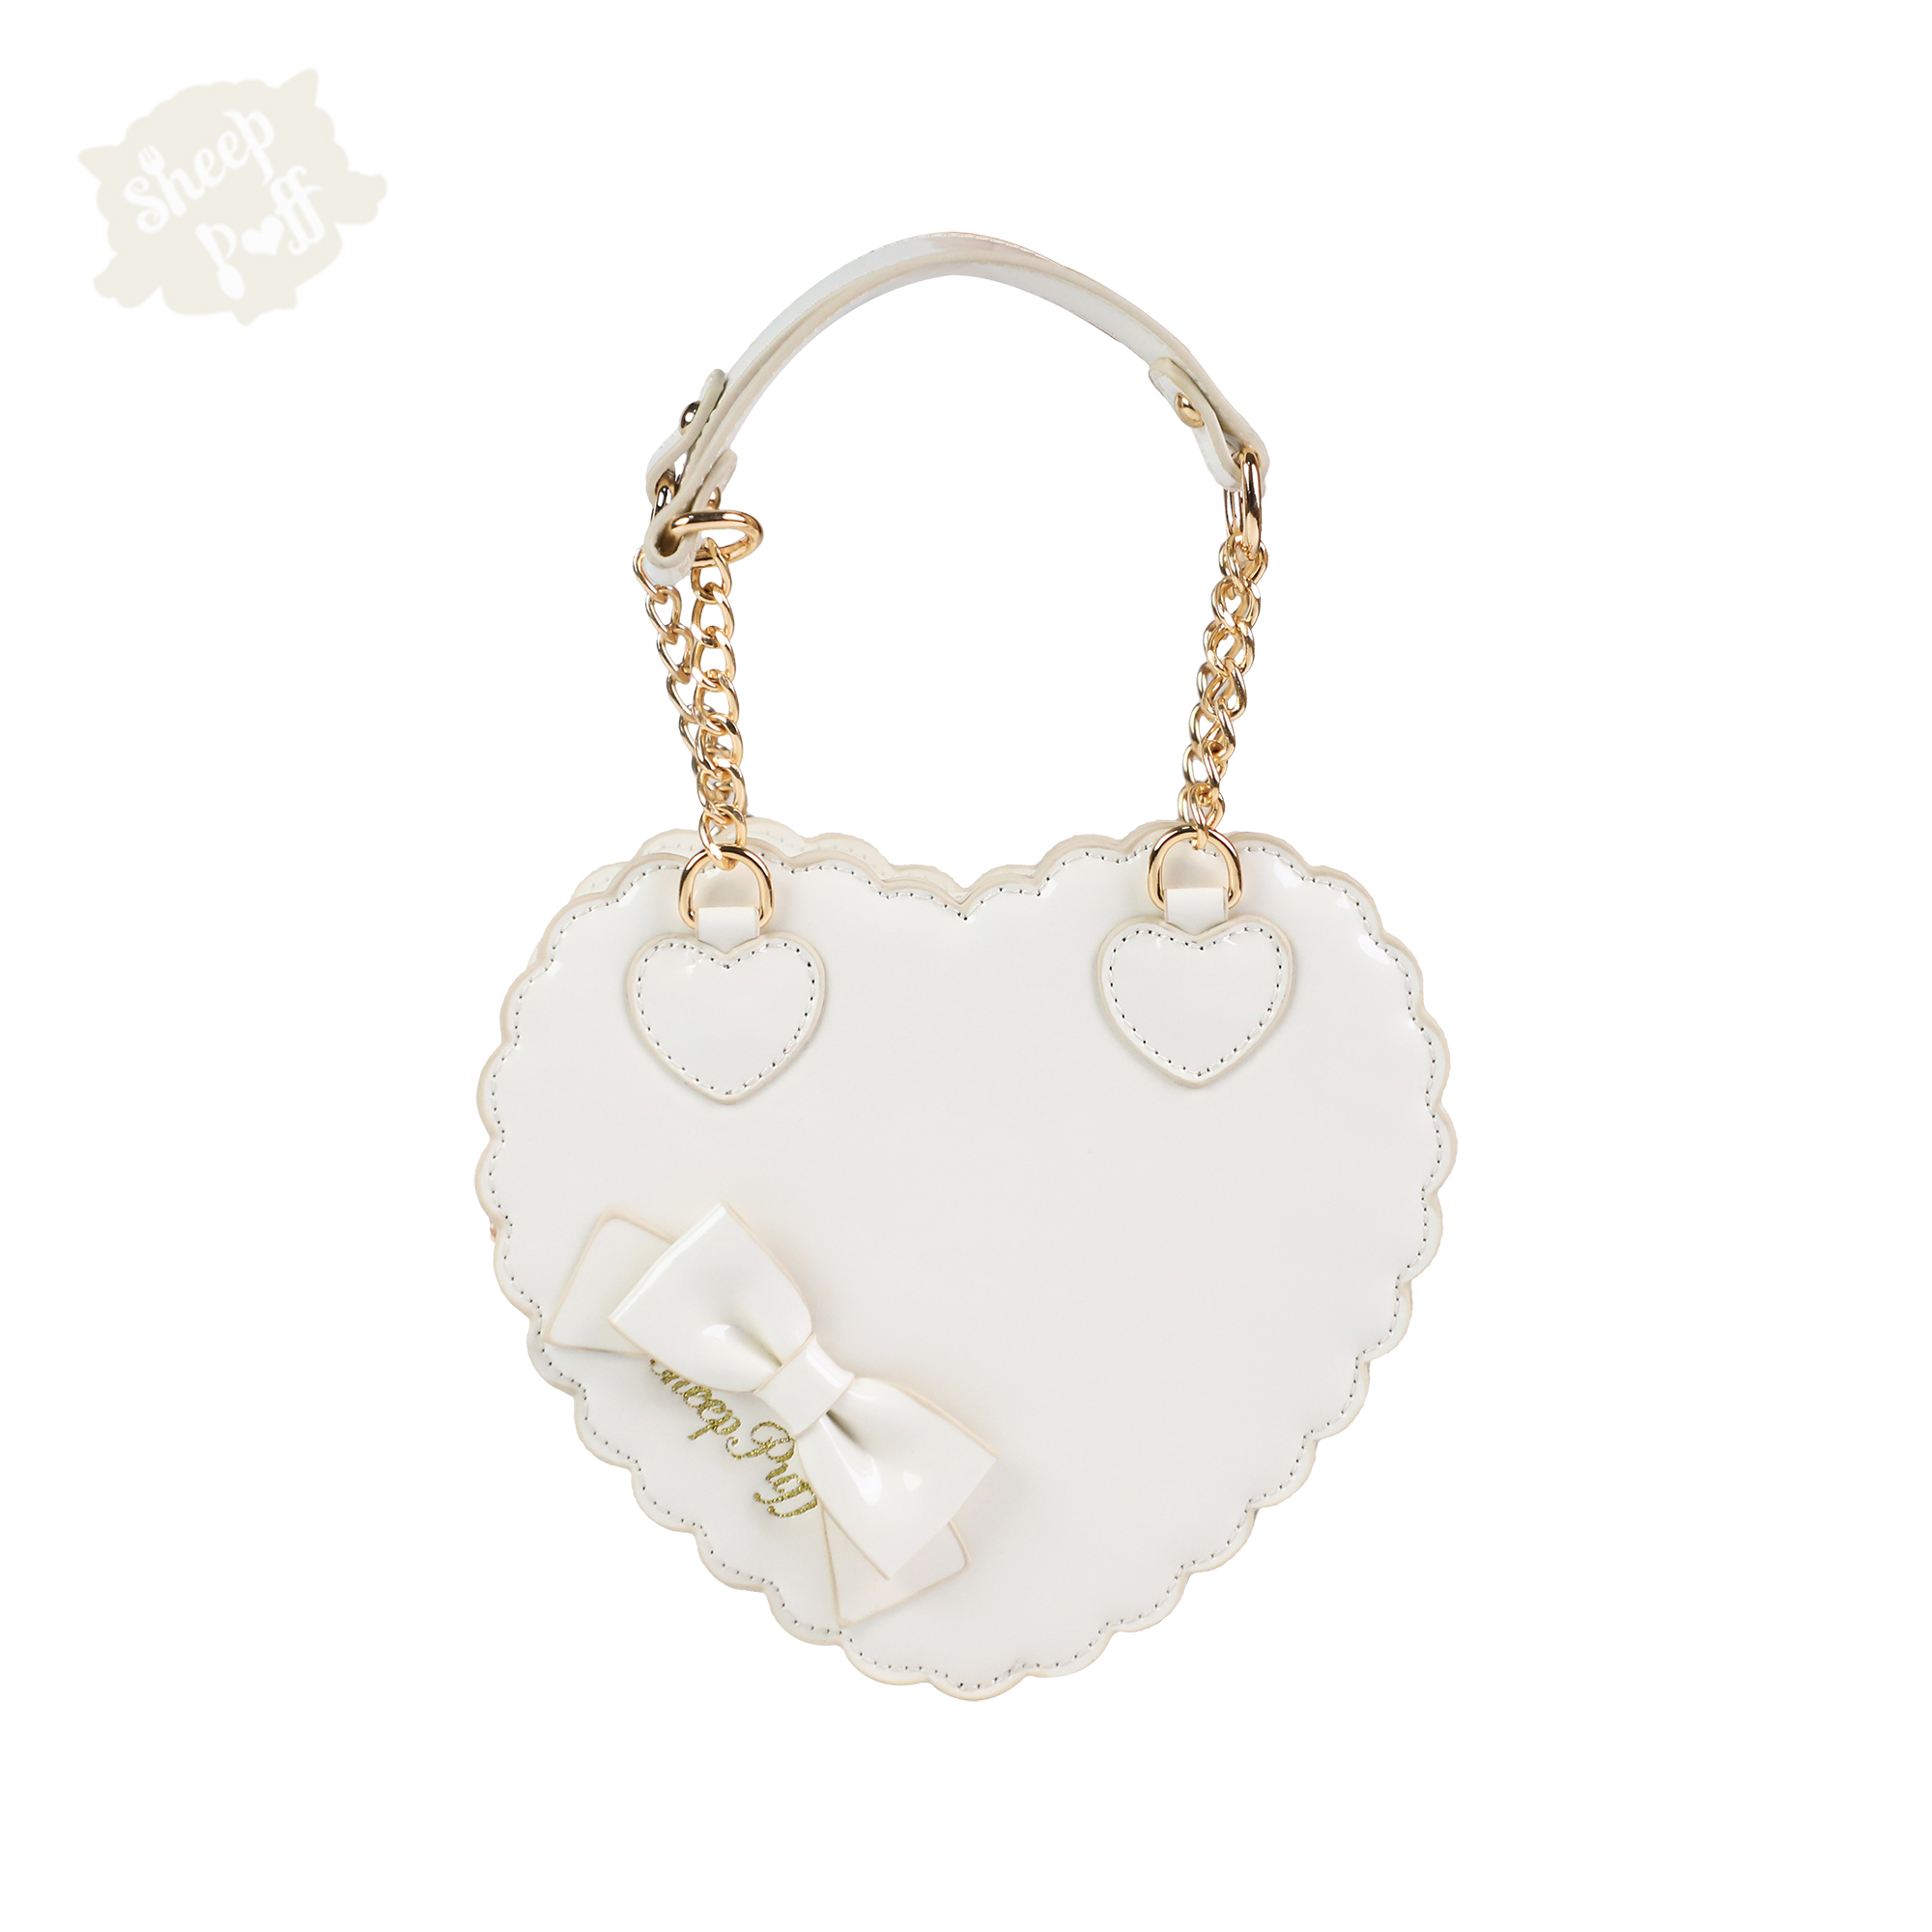 White【 Balance 】 trumpet Biscuits Love bag original Inclined shoulder bag Lolita female portable solar system bow Female bag